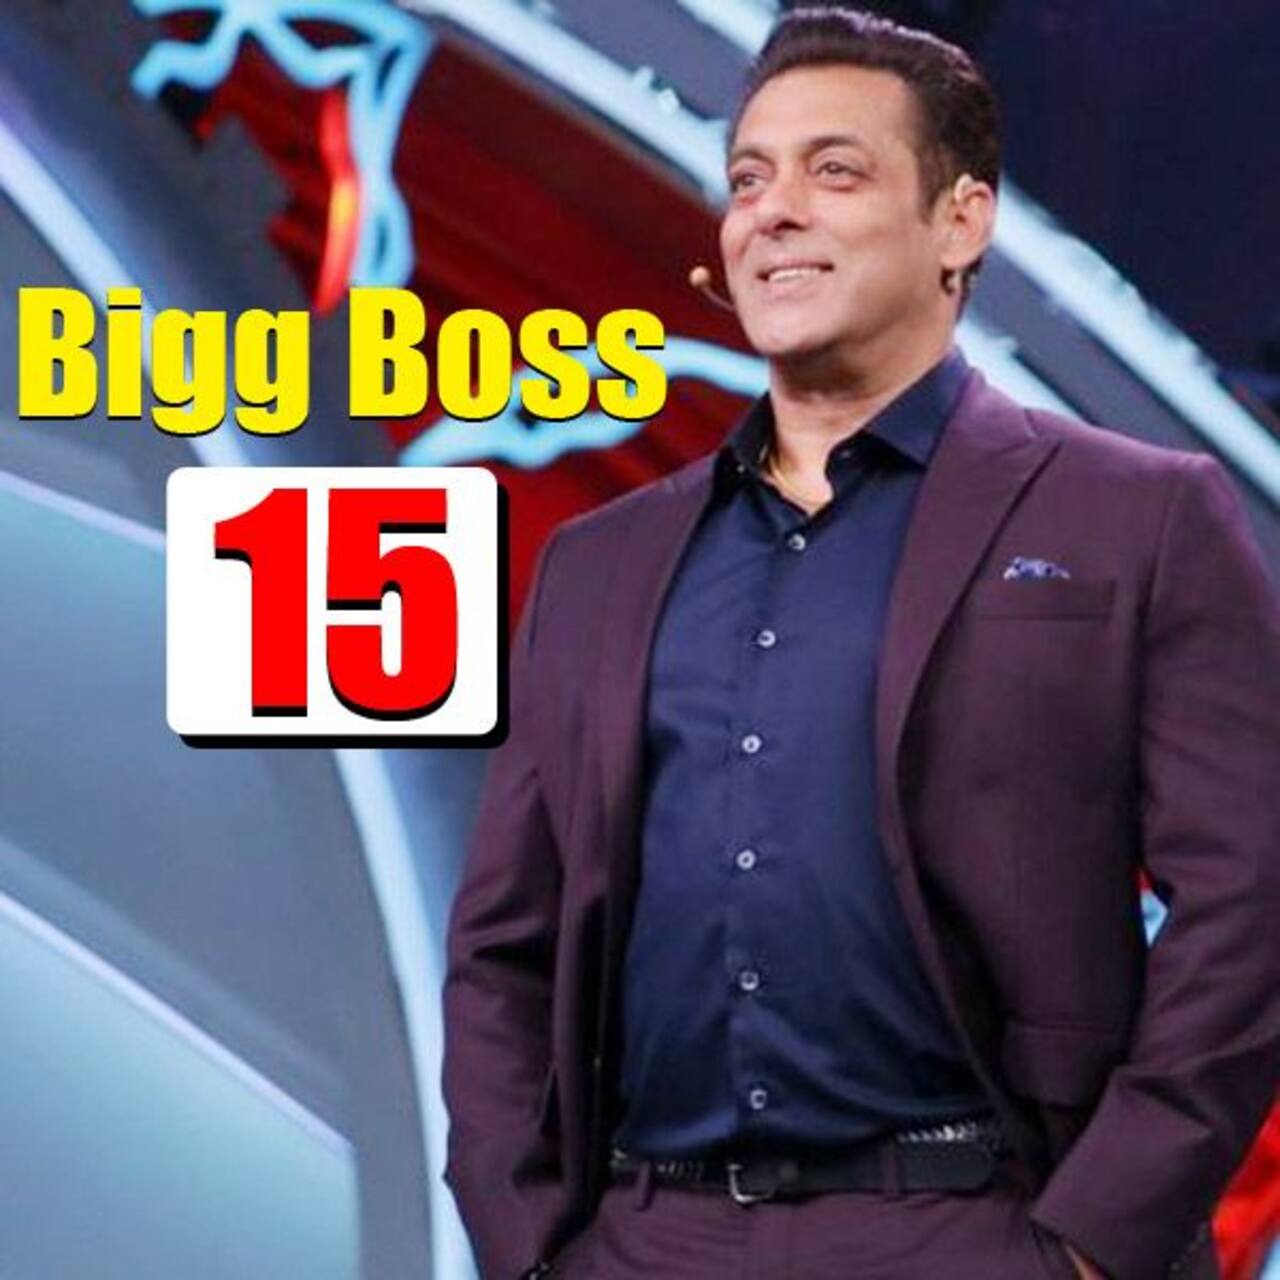 Bigg Boss 15: जल्द आएगा Salman Khan के शो का अगला सीजन, हिस्सा लेने के लिए ऐसे दें अपना ऑडिशन